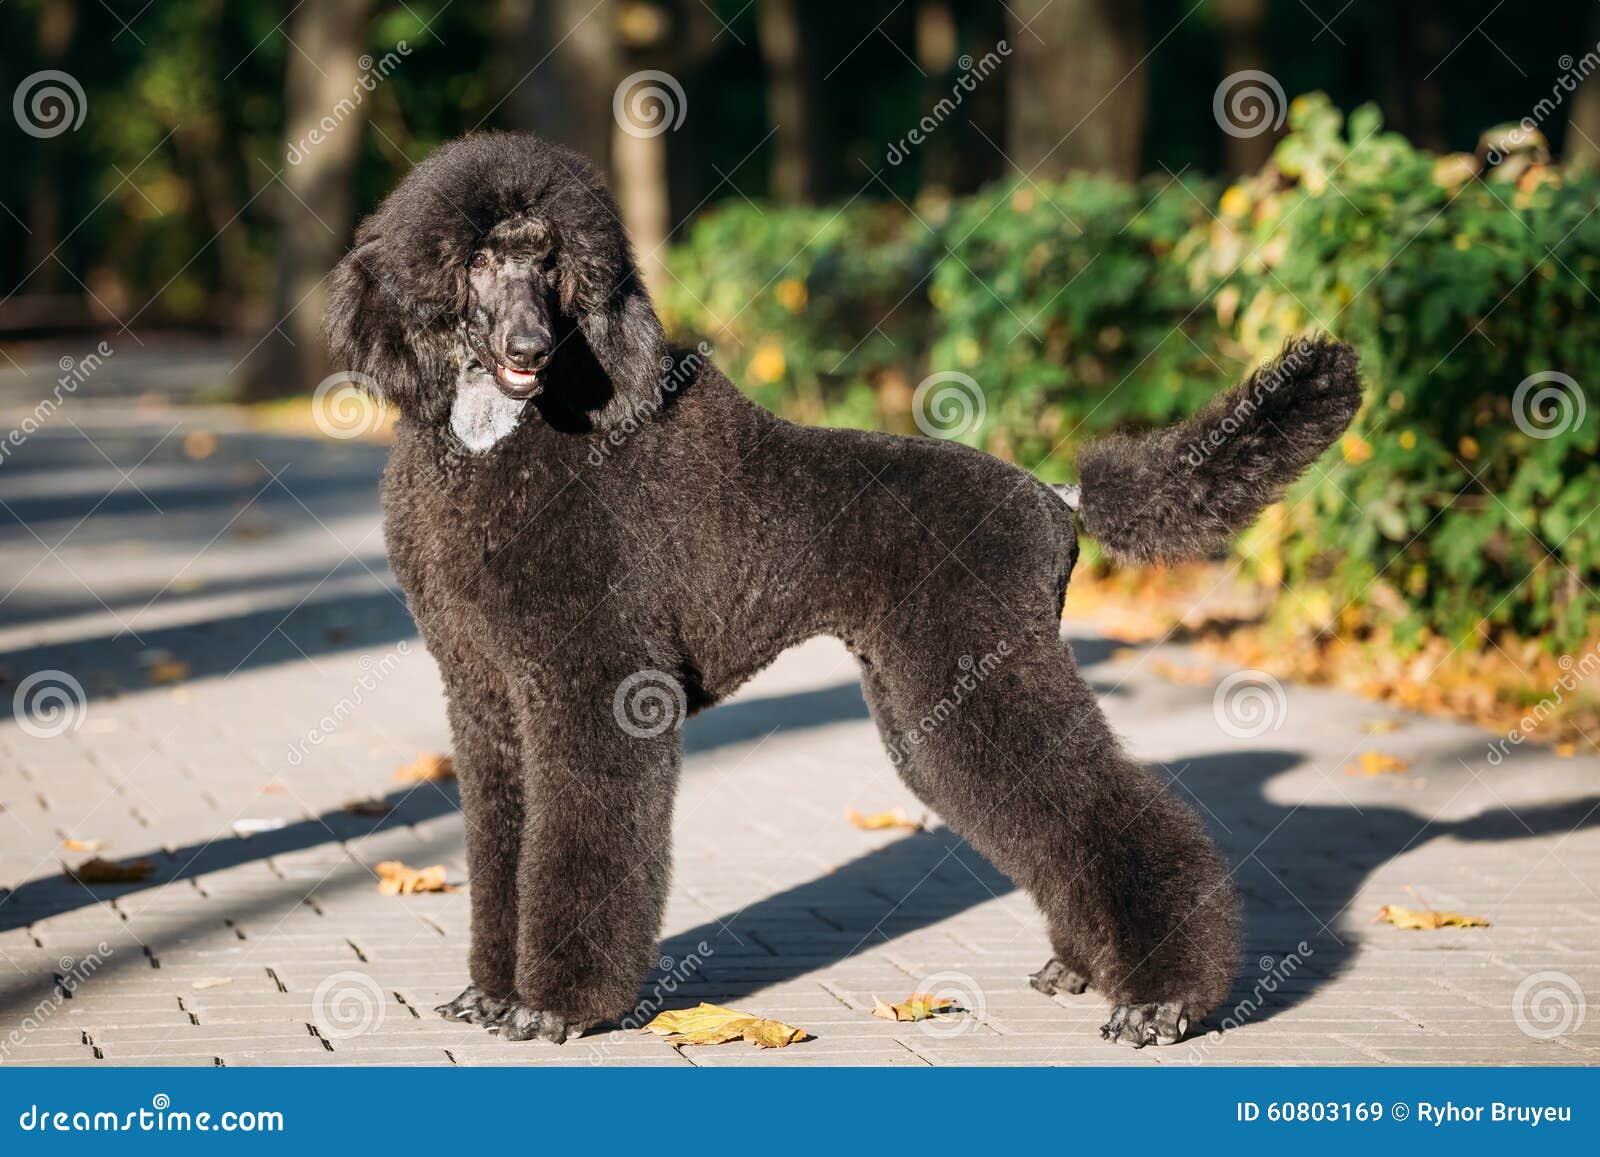 black standard poodle dog outdoor